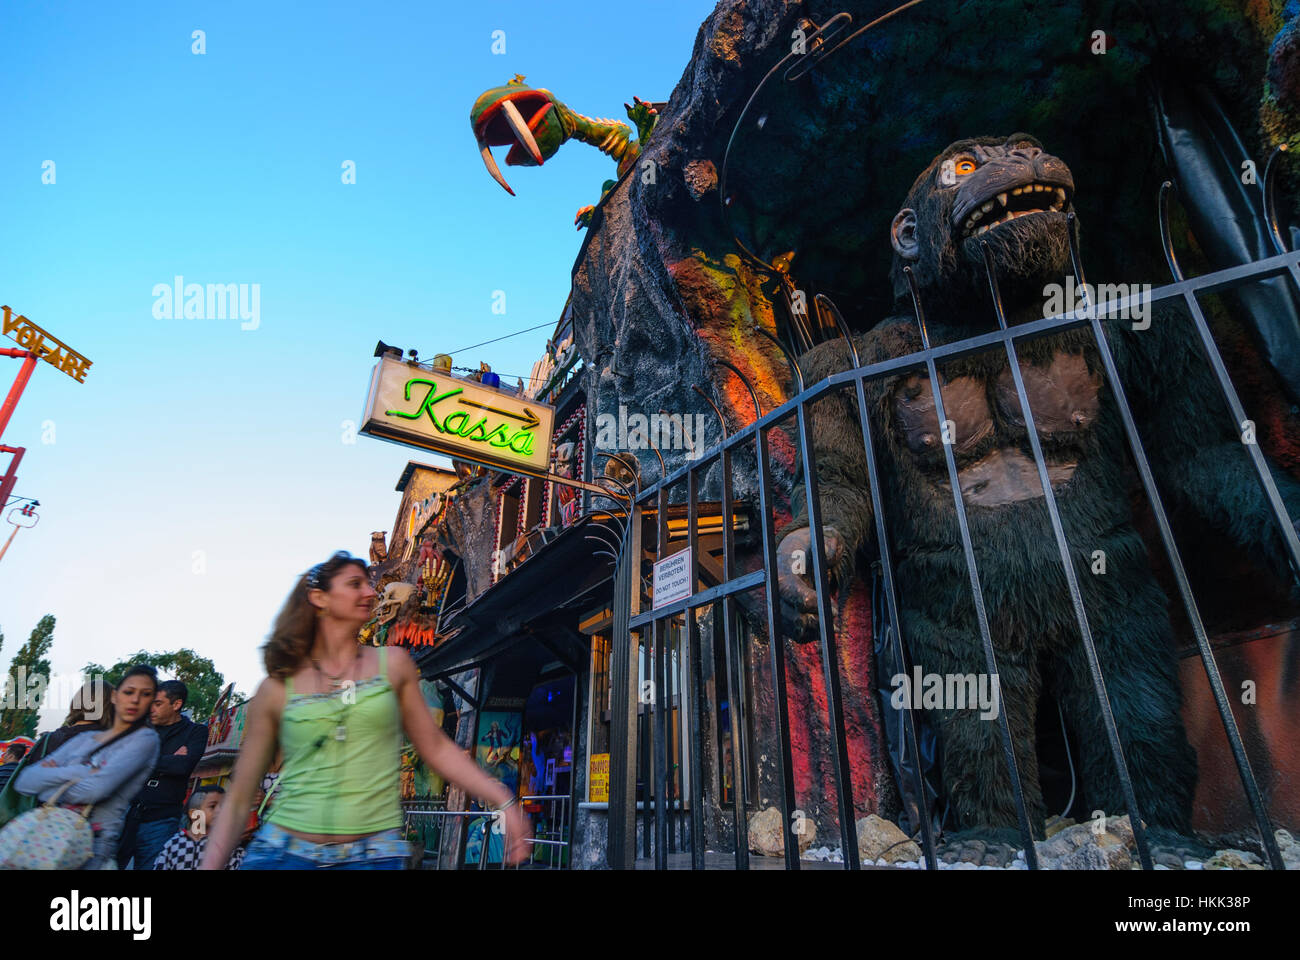 Wien, Vienna: Prater; Ghost castle with oversized gorilla, 02., Wien, Austria Stock Photo